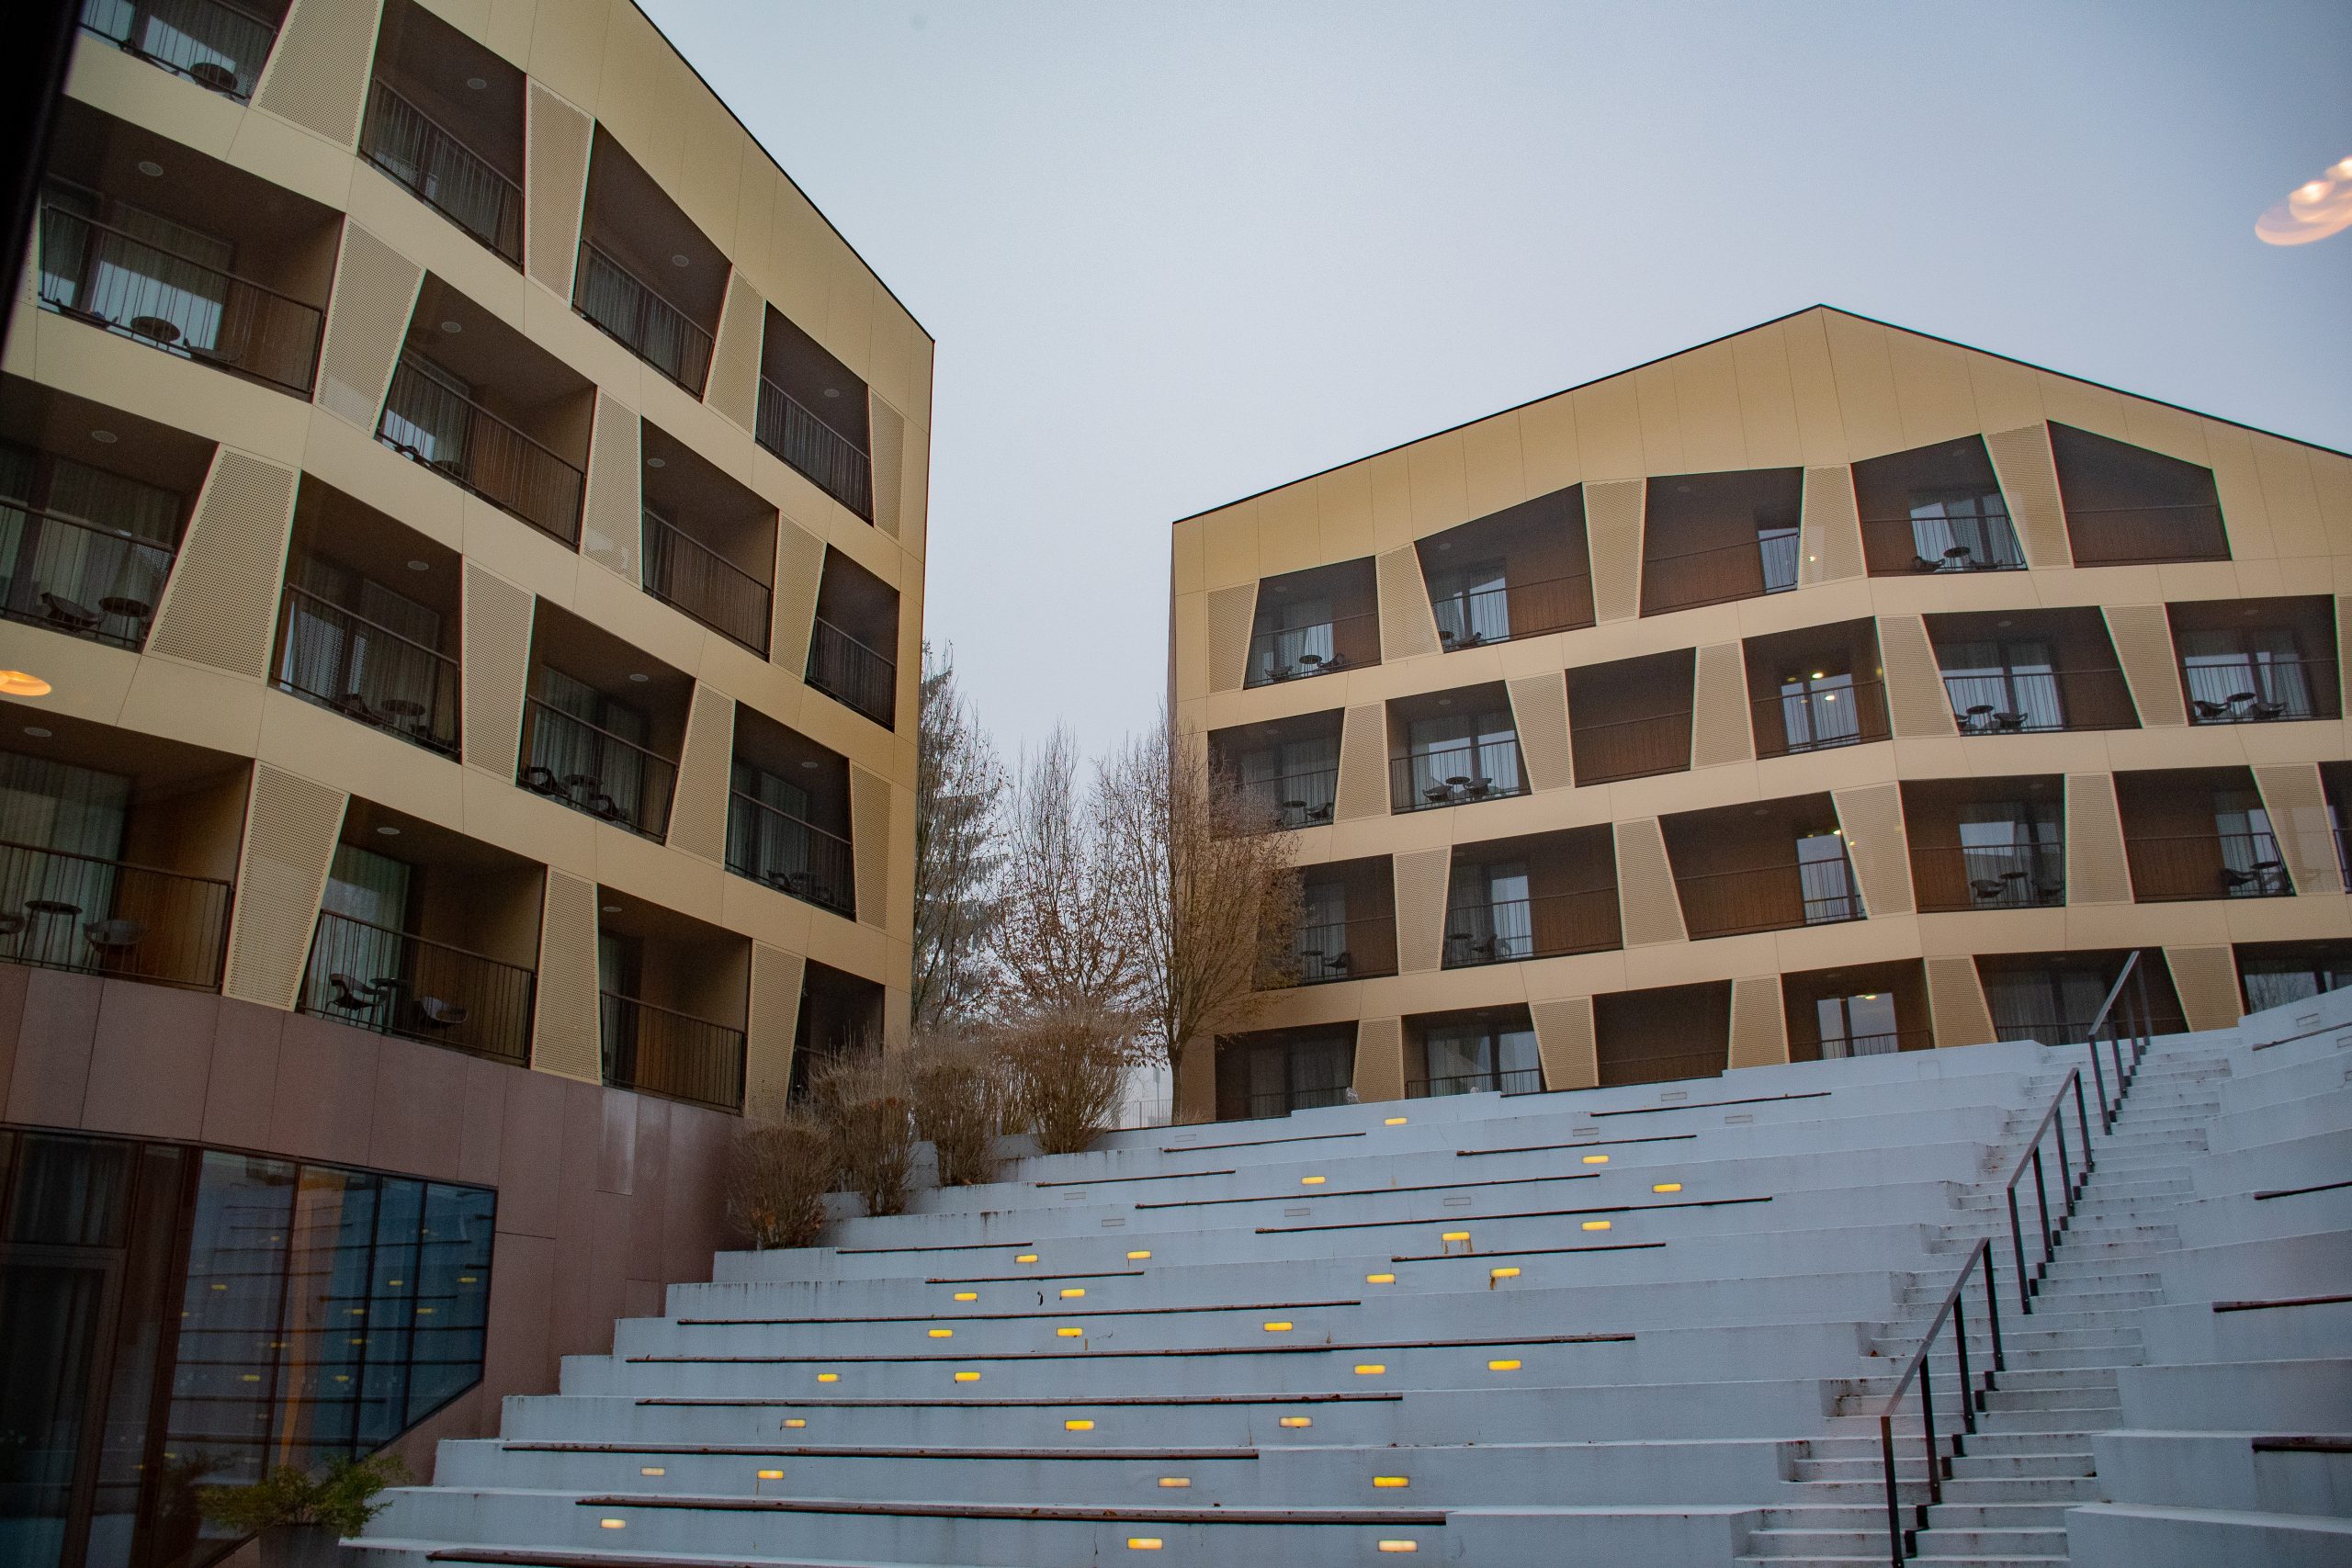 De architectuur van Terme Tuhelj combineert moderne ontwerpelementen met de natuurlijke omgeving